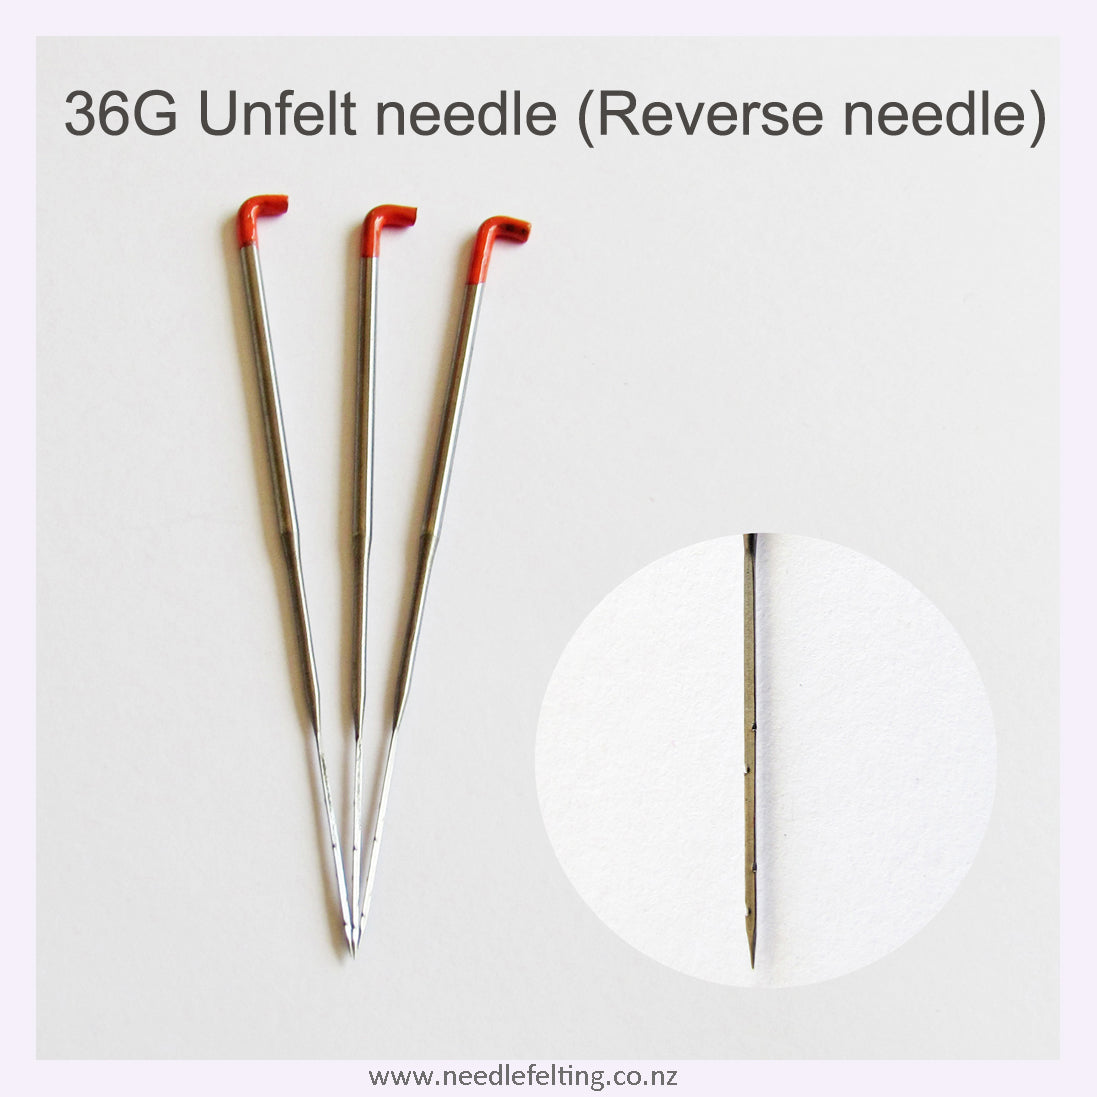 Felting Needles Set of Six, Needle Felting Spiral and Star Needles, Twisted  Star Felting Needles, 3 Sizes or Single Size Needles, 40, 38, 36 